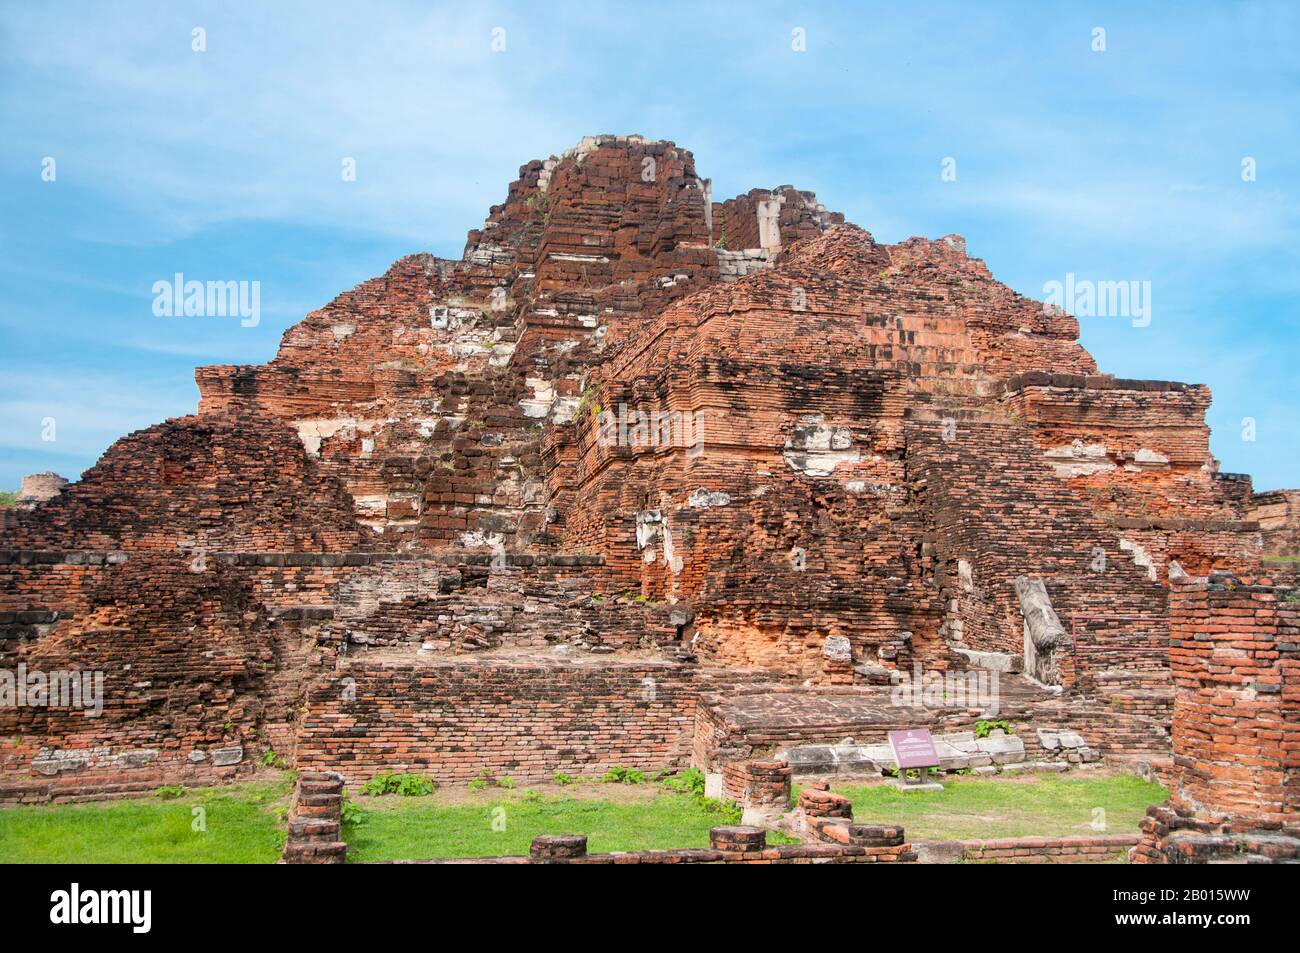 Thailandia: Wat Phra Mahathat, Ayutthaya Historical Park. Wat Phra Mahathat fu costruito durante il regno di Borommaracha i (Boromma Rachathirat i) o Khun Luang Pa Ngua (1370-1388), che era il terzo re del regno di Ayutthaya. Ayutthaya (Ayudhya) era un regno siamese che esisteva dal 1351 al 1767. Ayutthaya era amichevole verso i commercianti stranieri, compreso il cinese, vietnamita (Annamese), indiani, giapponesi e persiani, E poi i portoghesi, spagnoli, olandesi e francesi, permettendo loro di creare villaggi fuori dalle mura della città. Foto Stock